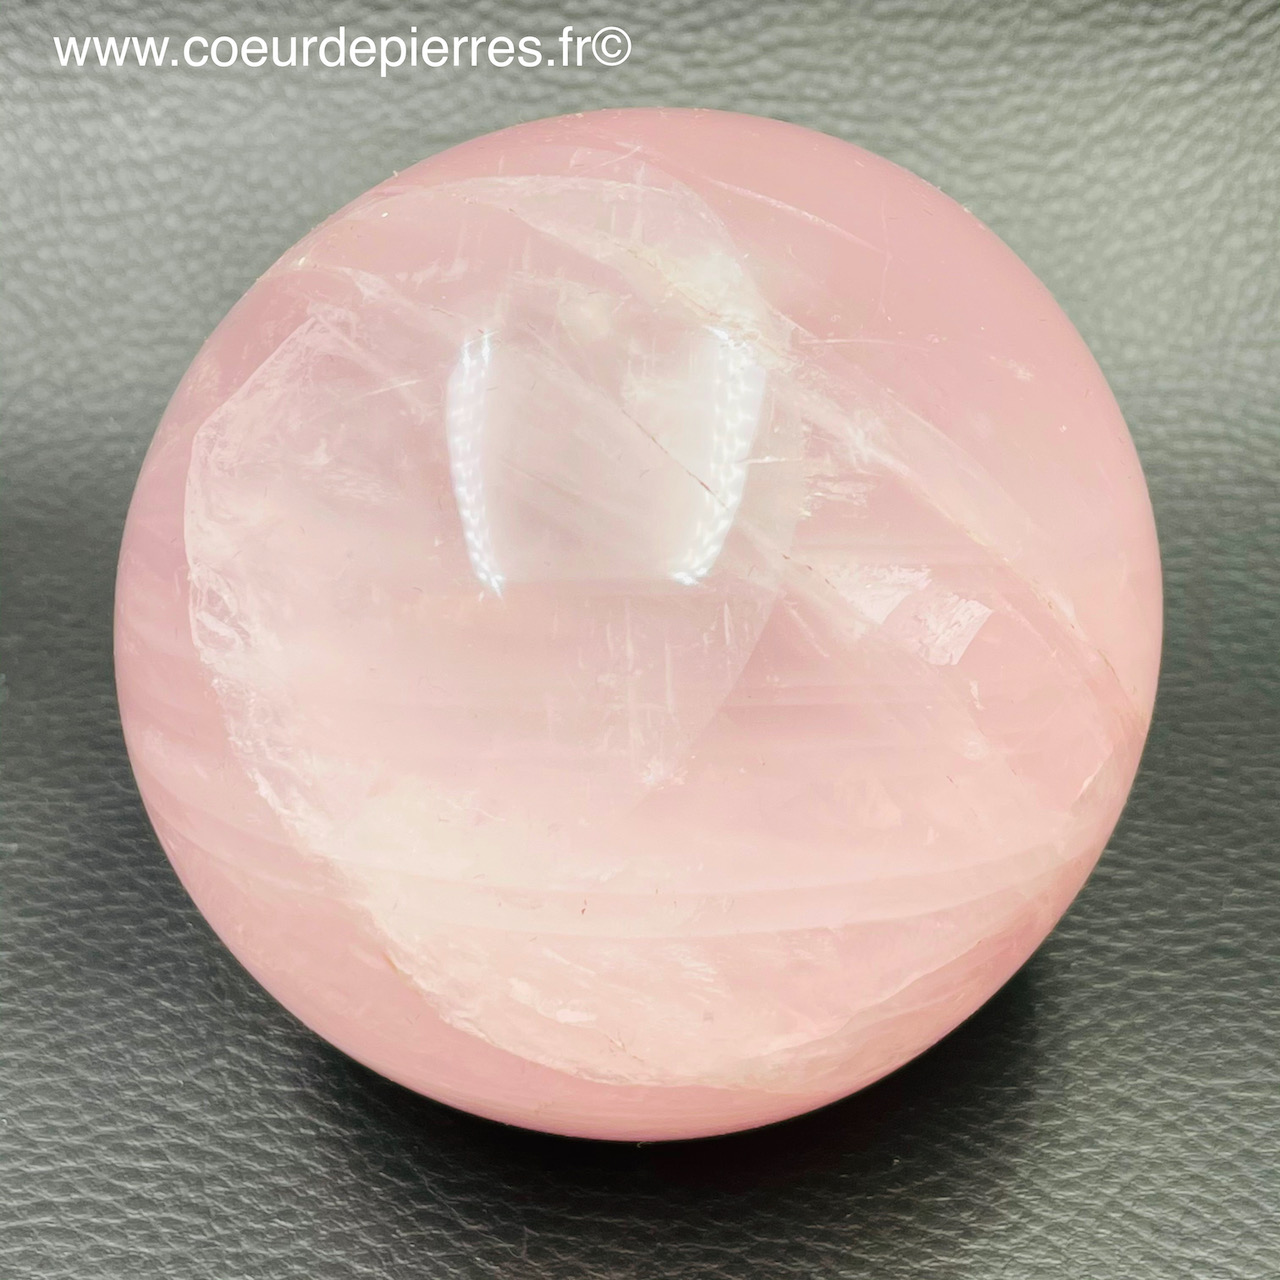 madagascar rose quartz sphere